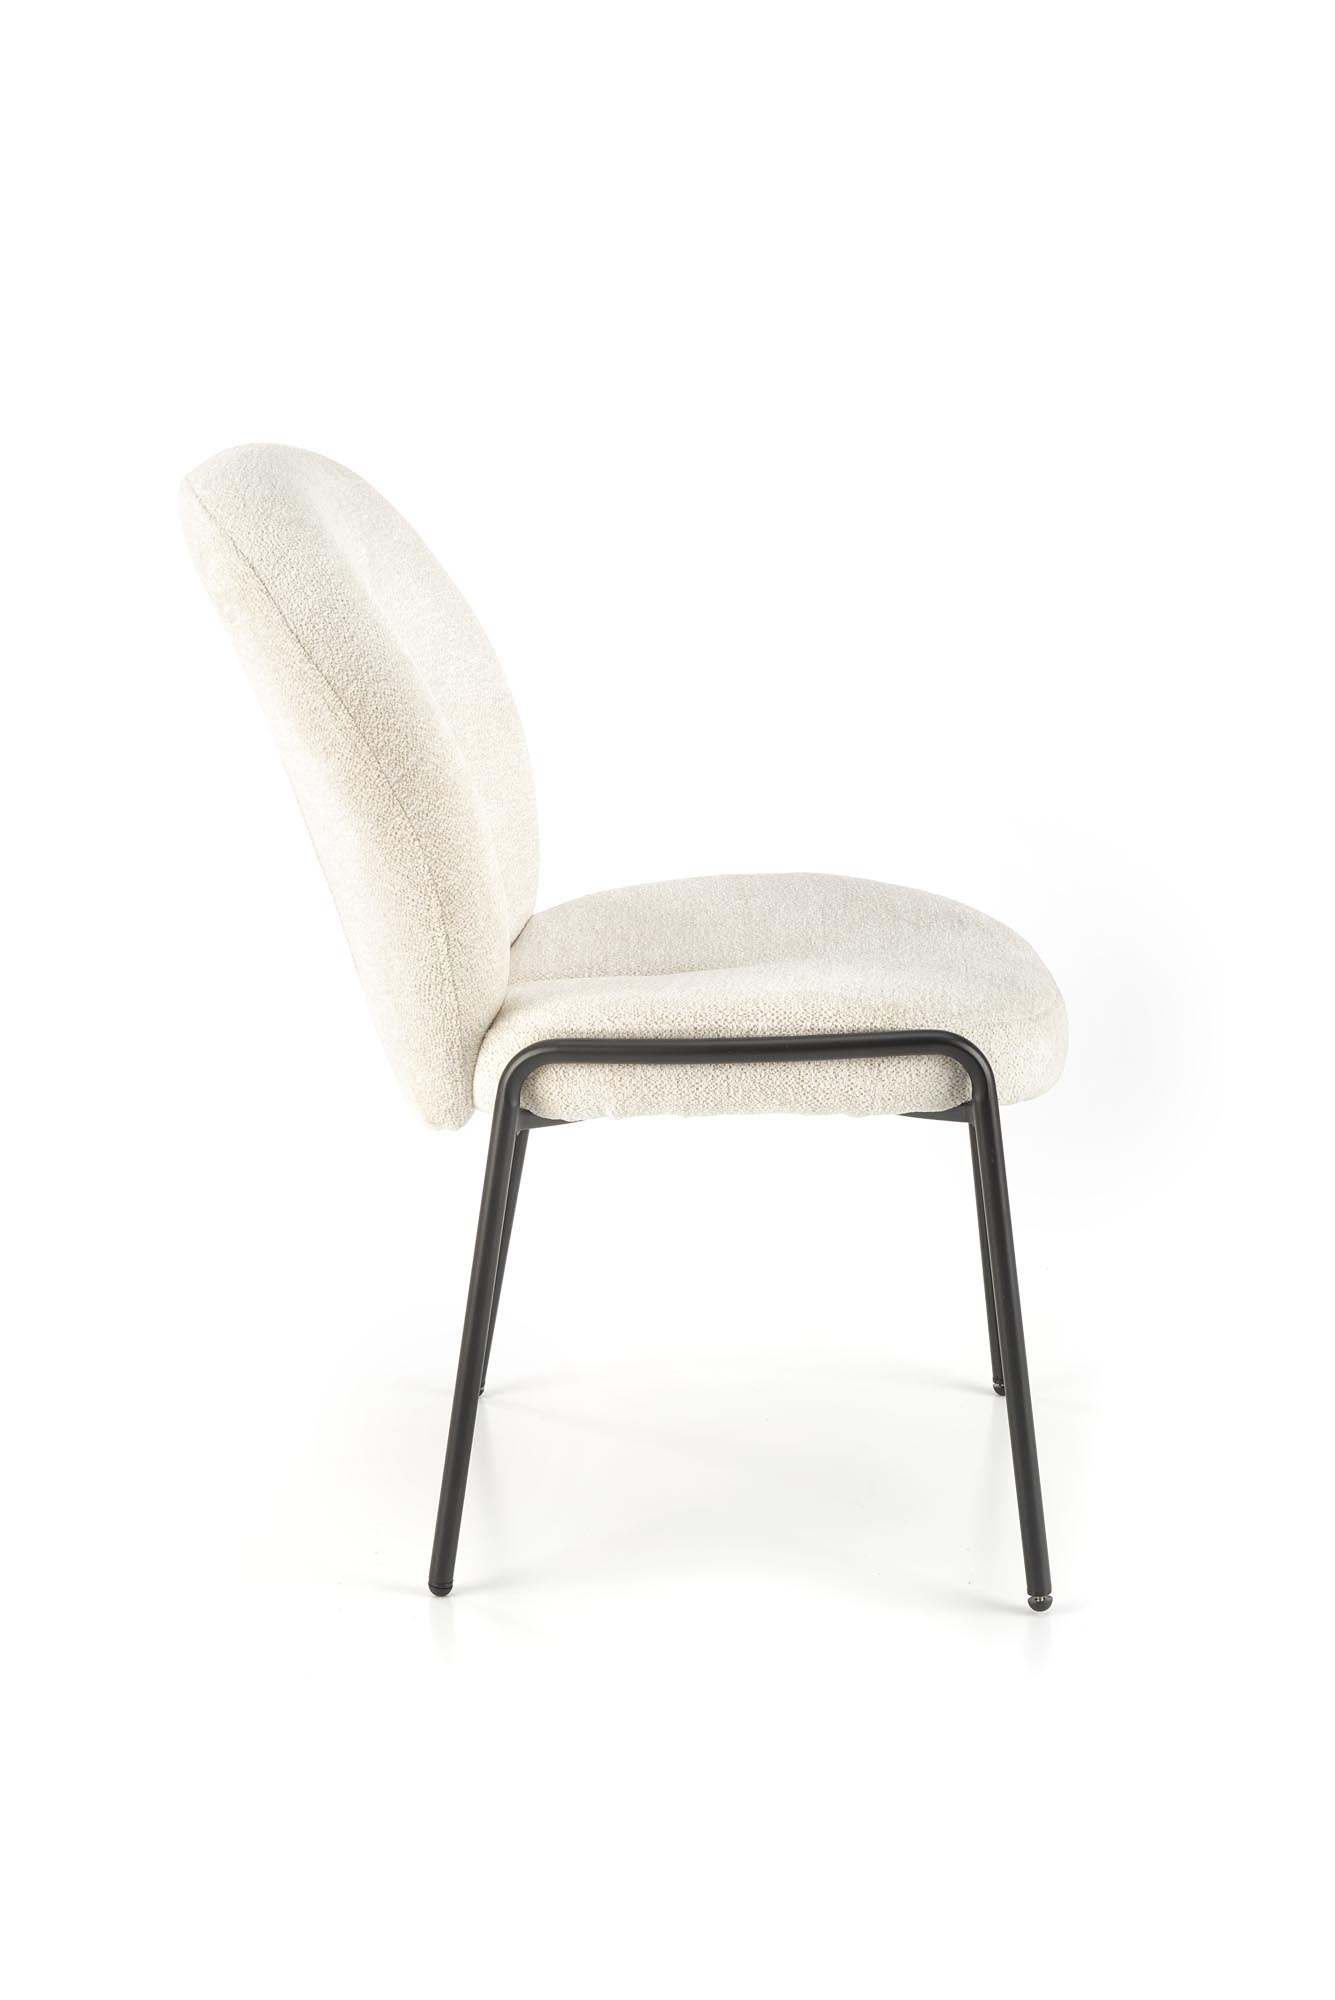 židle čalouněné K507 - Krémový židle čalouněné k507 - Krémový